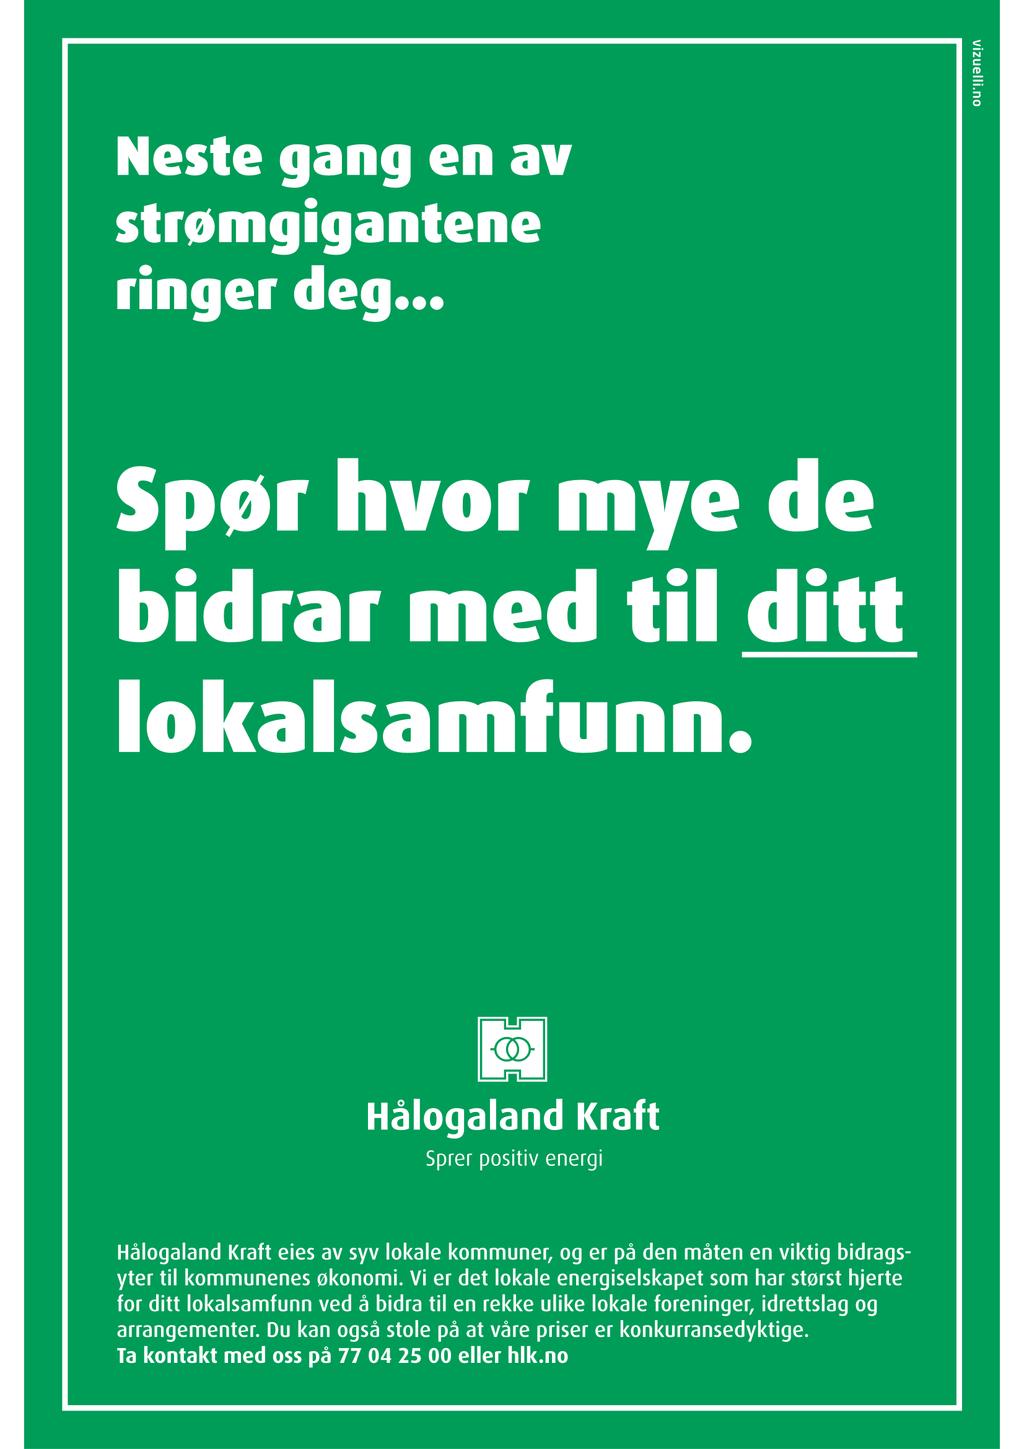 I år som tidligere år har vi fokus på sikkerhet i løypa og har leid inn Norsk Folkehjelp Harstad. Det er en betryggende når en skal ta fatt på den nye jobben som rennleder.